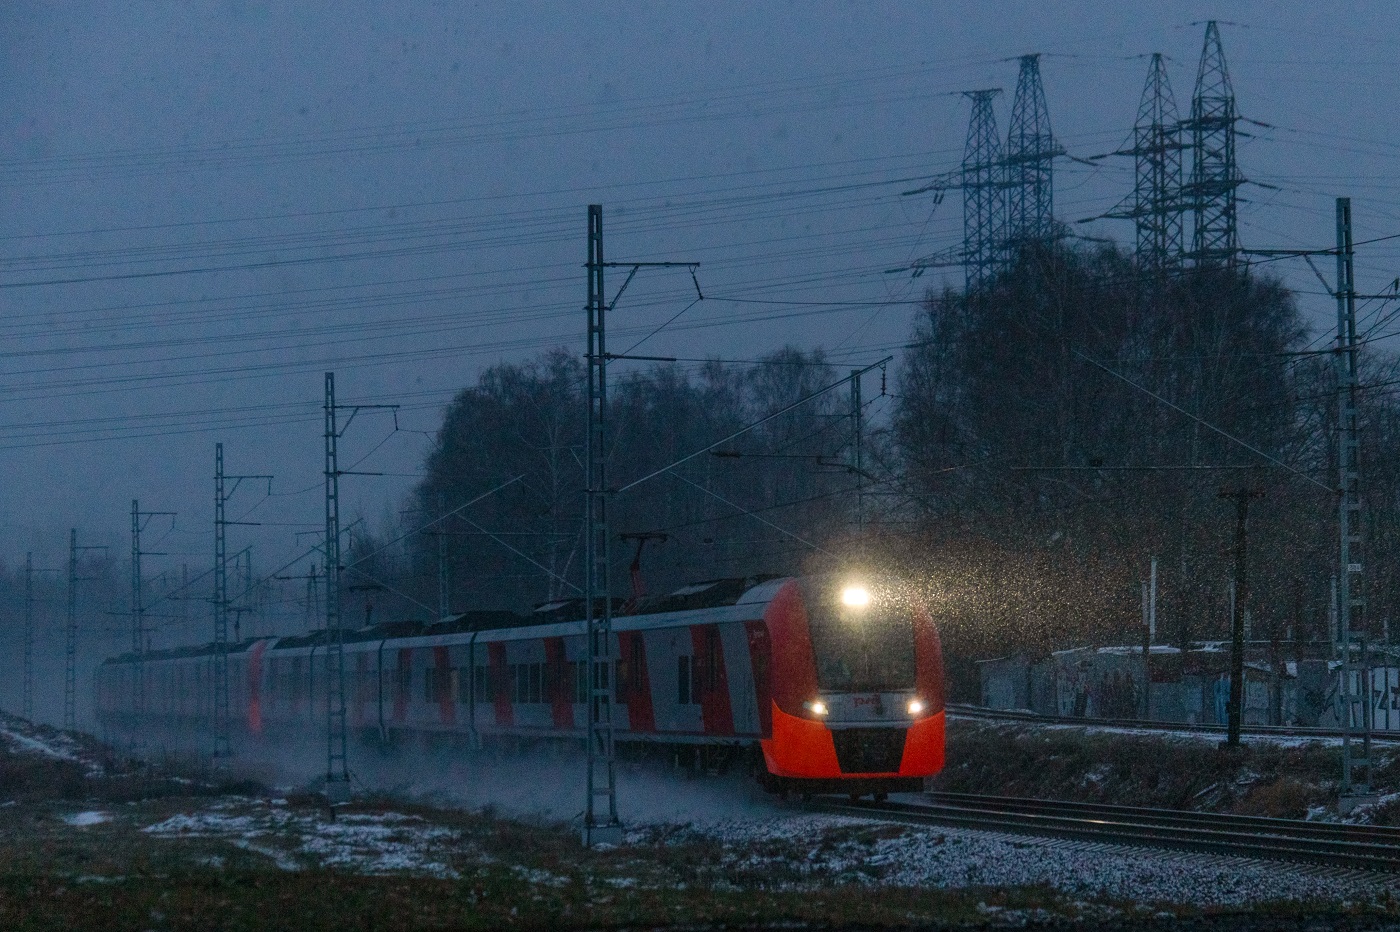 ЭС1П-017; Фотозарисовки (Московская железная дорога)